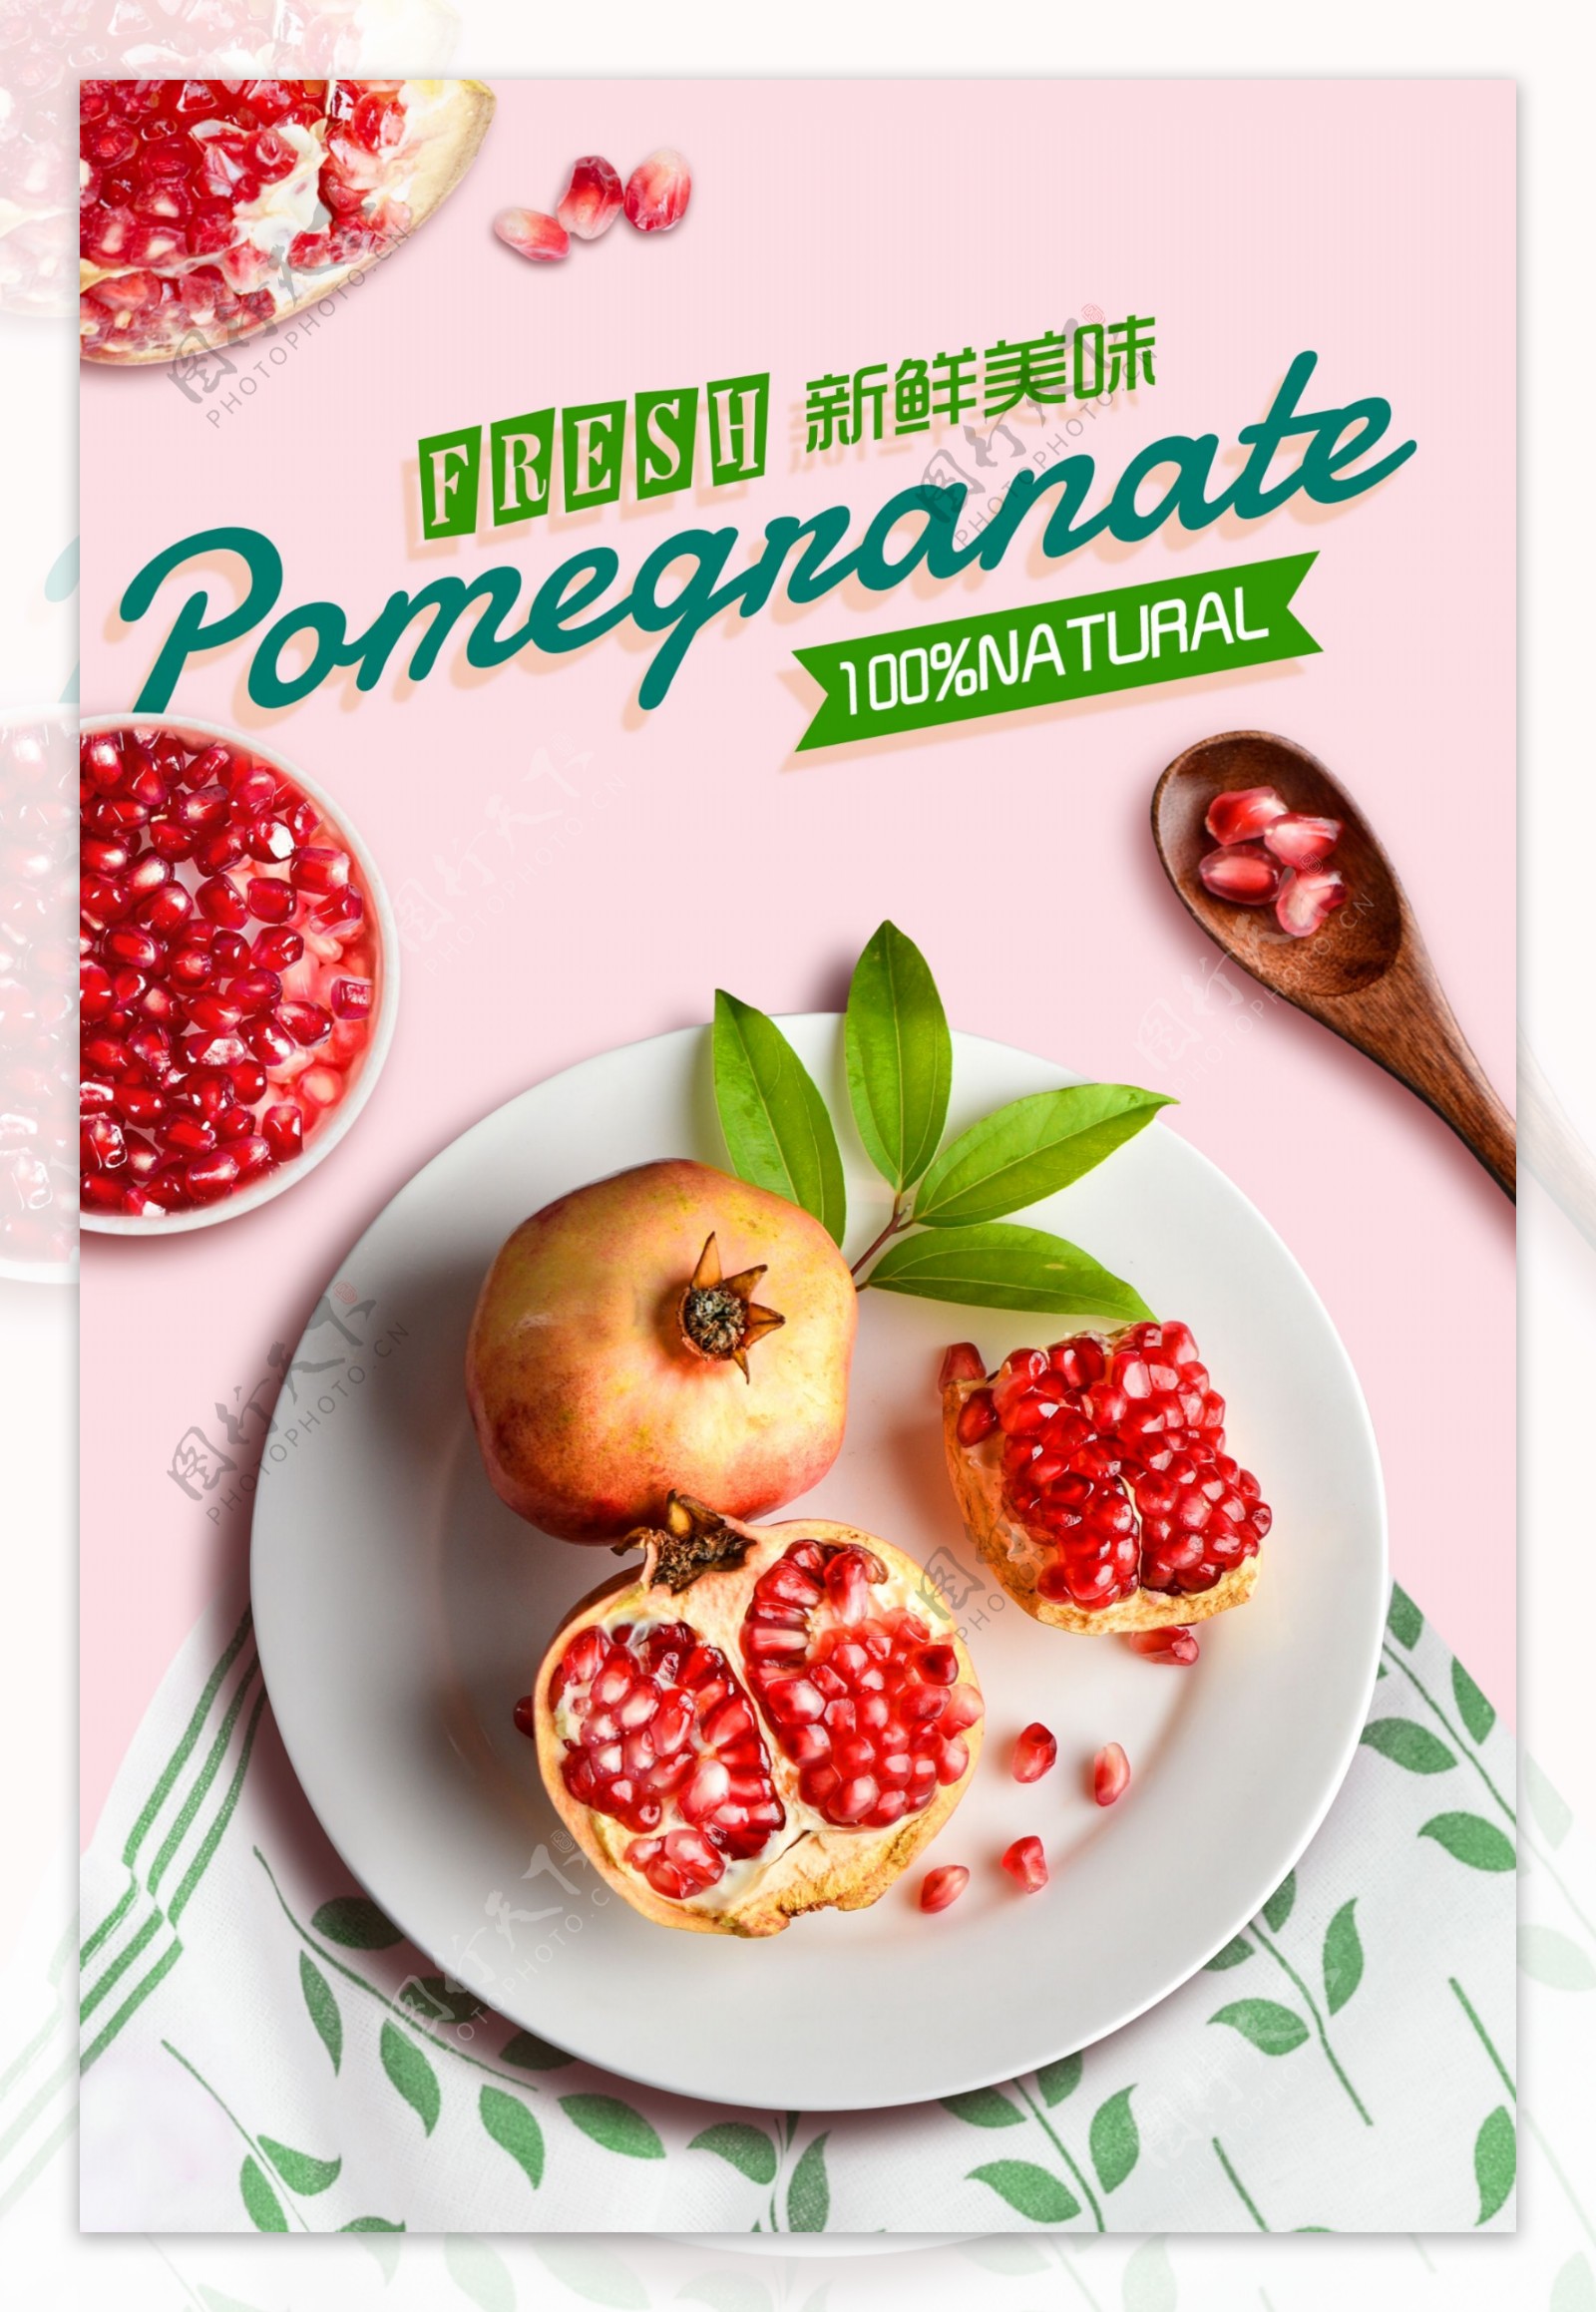 石榴水果新鲜美味活动宣传海报